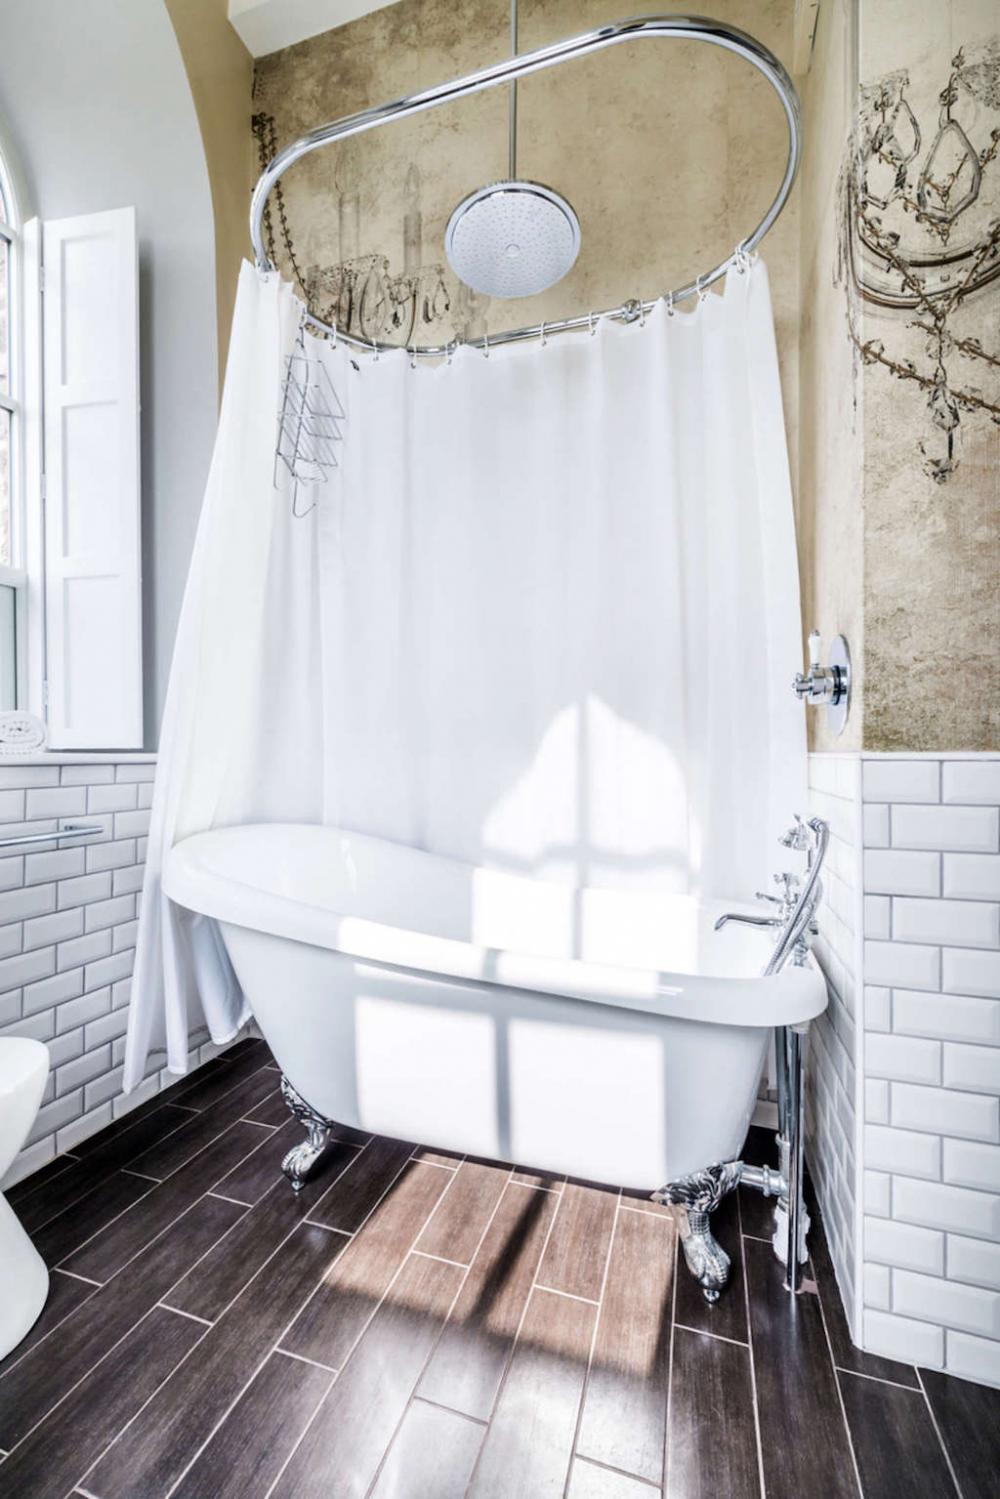 Rèm che bồn tắm và trang trí tường nhấn mạnh đặc điểm của một  ​ngôi nhà đồng quê theo một cách rất tinh tế và phong cách